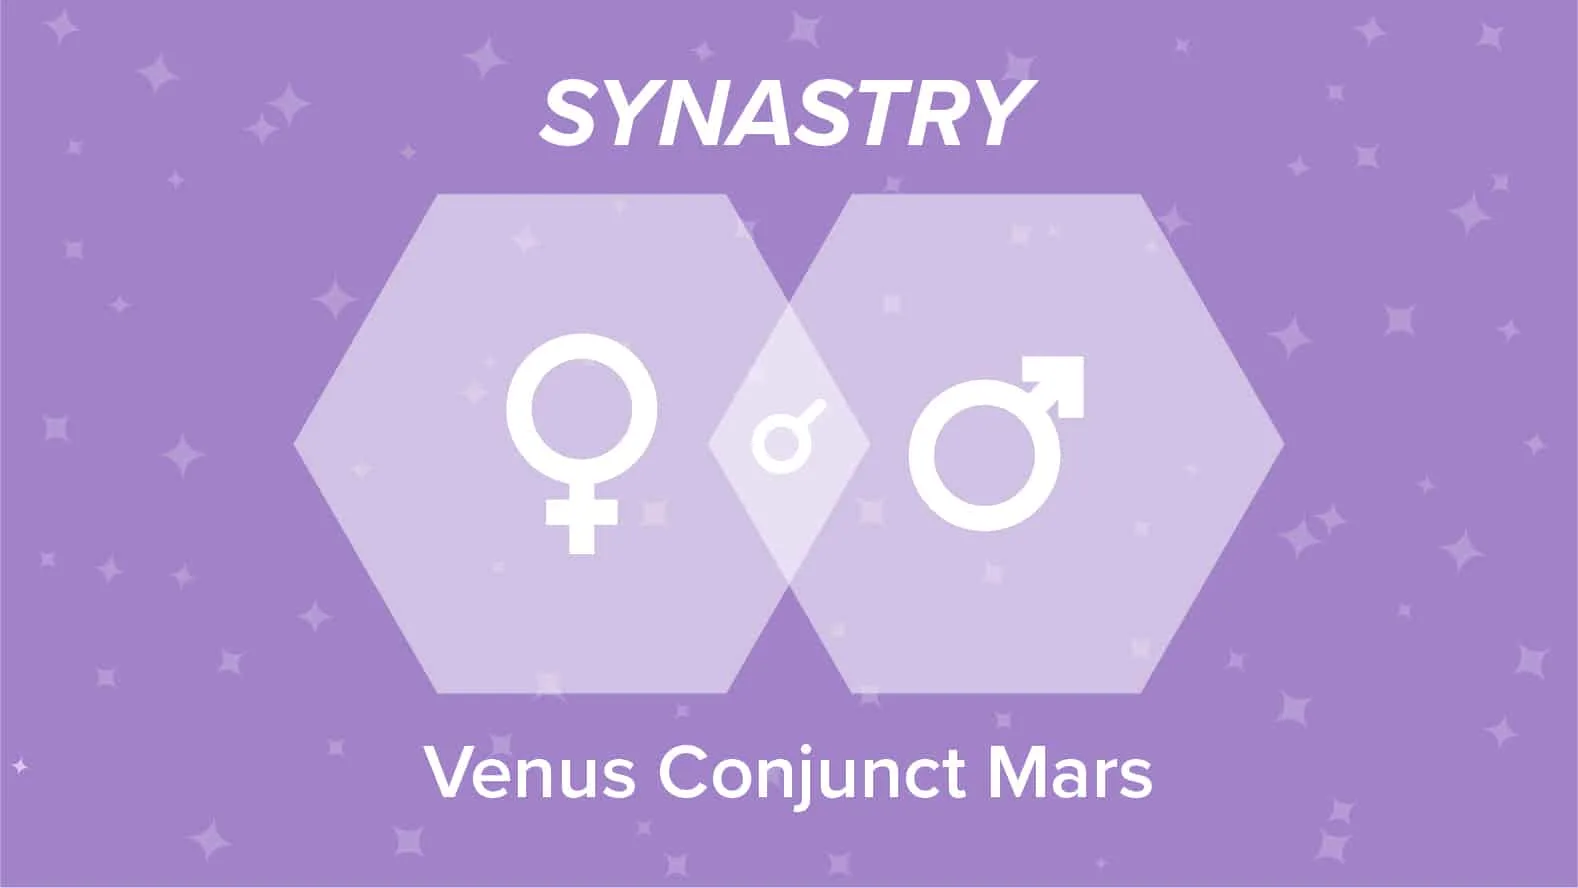 Venus Conjunct Mars Synastry